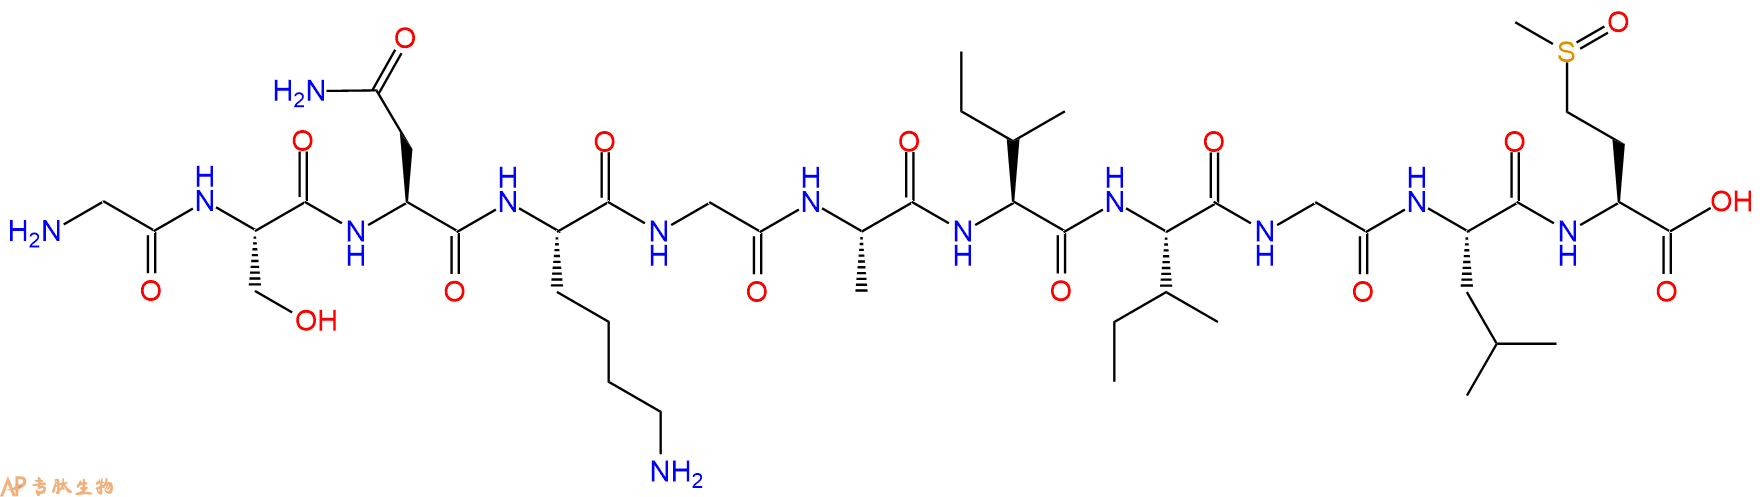 专肽生物产品淀粉肽(Met(O)³⁵)-Amyloid β-Protein (25-35)292147-12-7